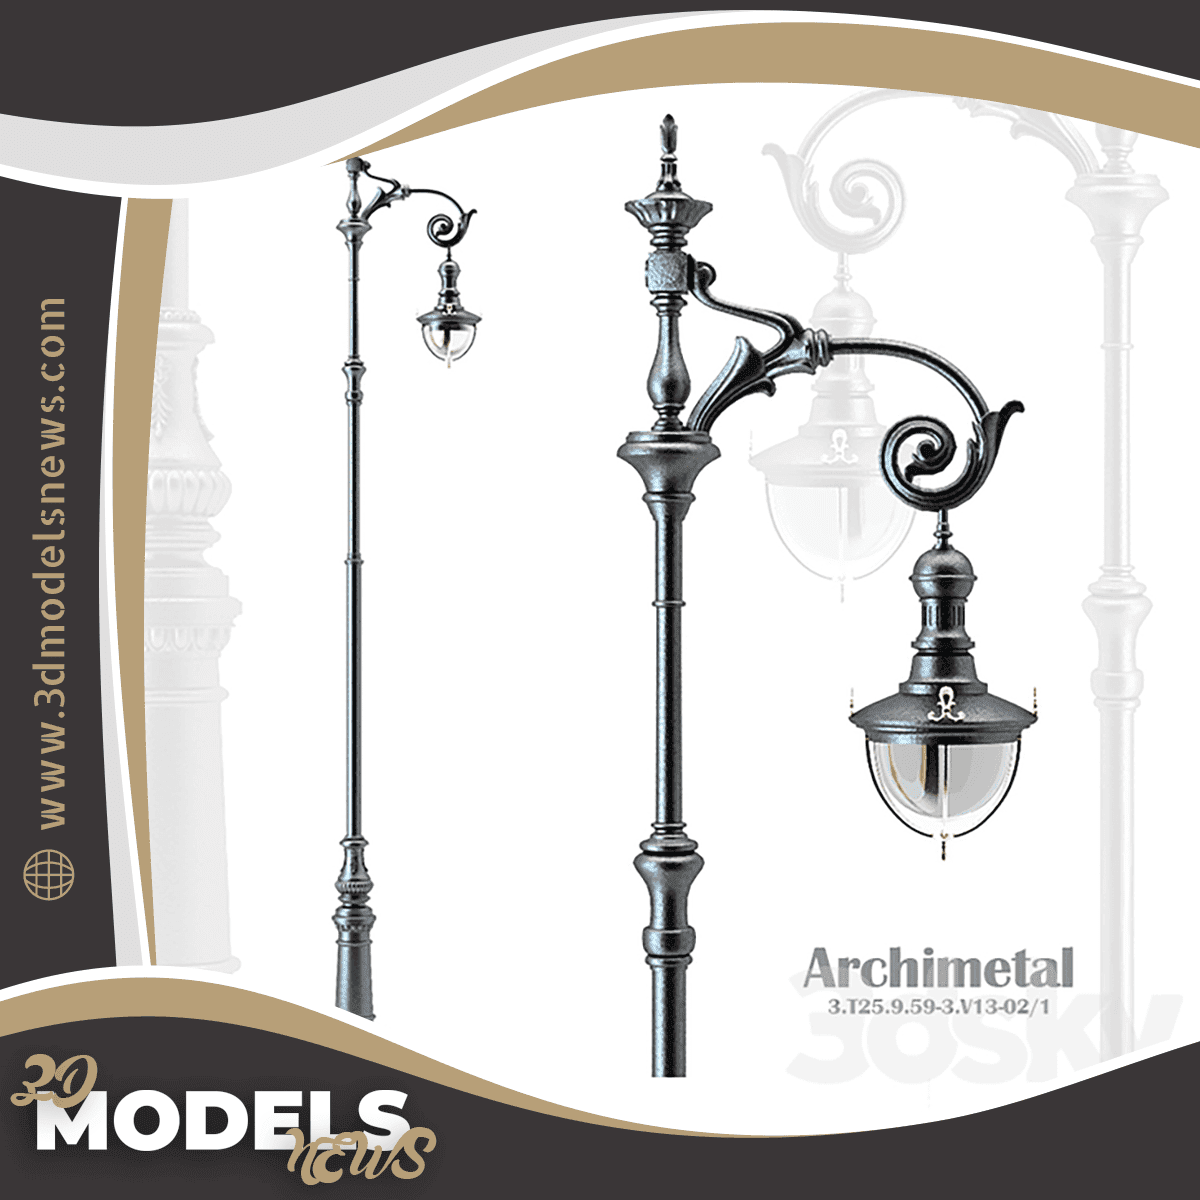 Lighting poles model Archimetall